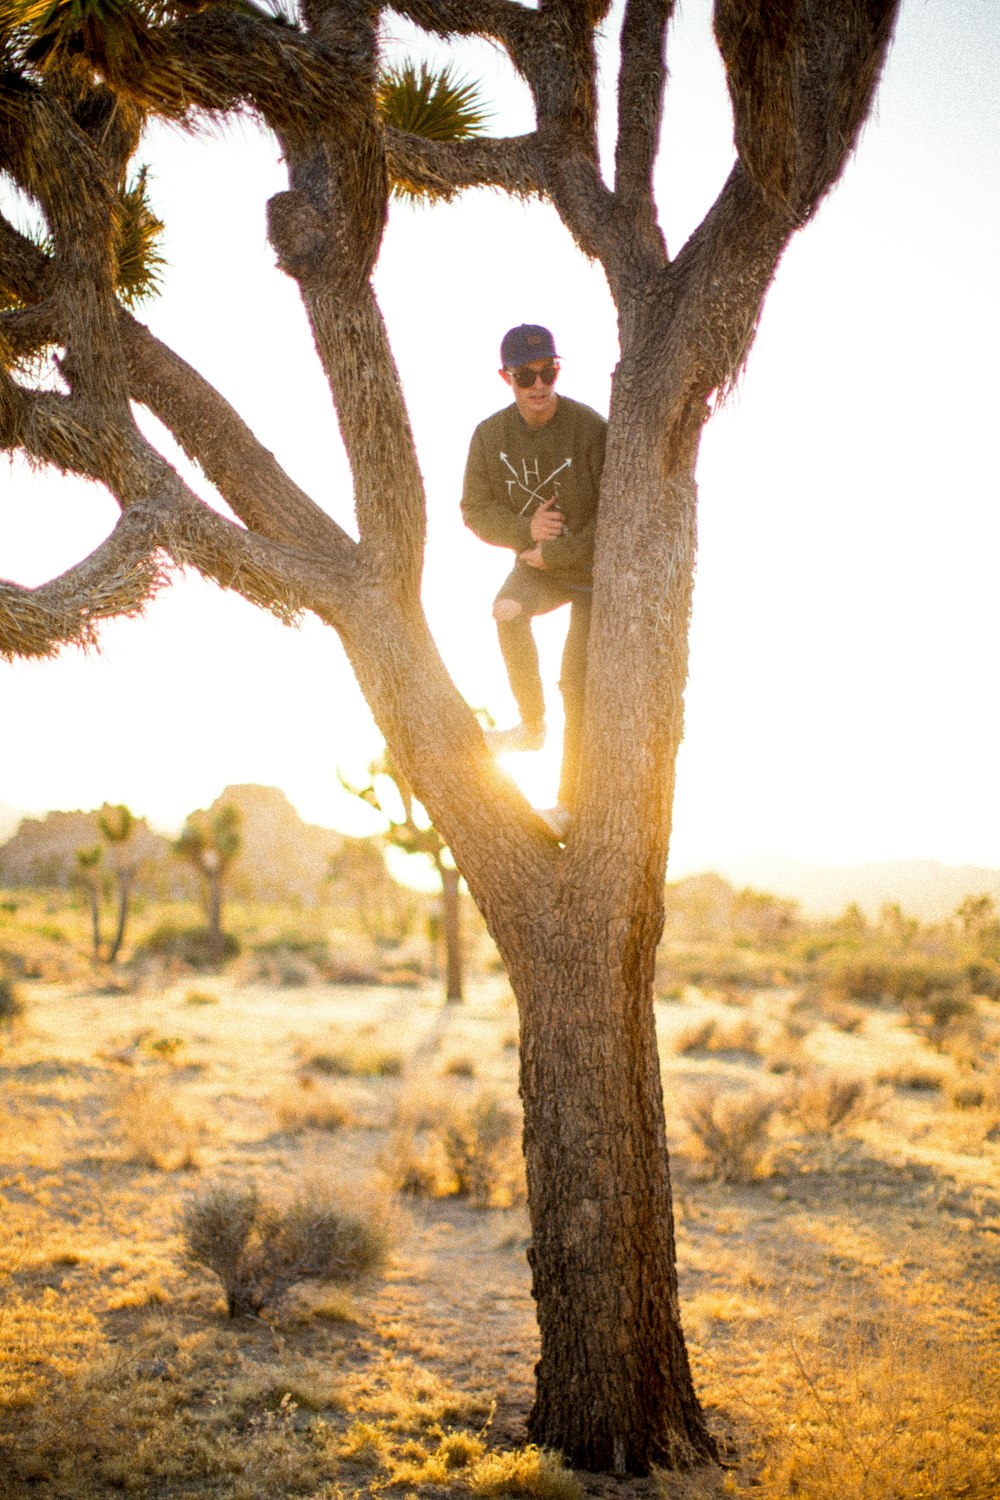 man on tree in desert